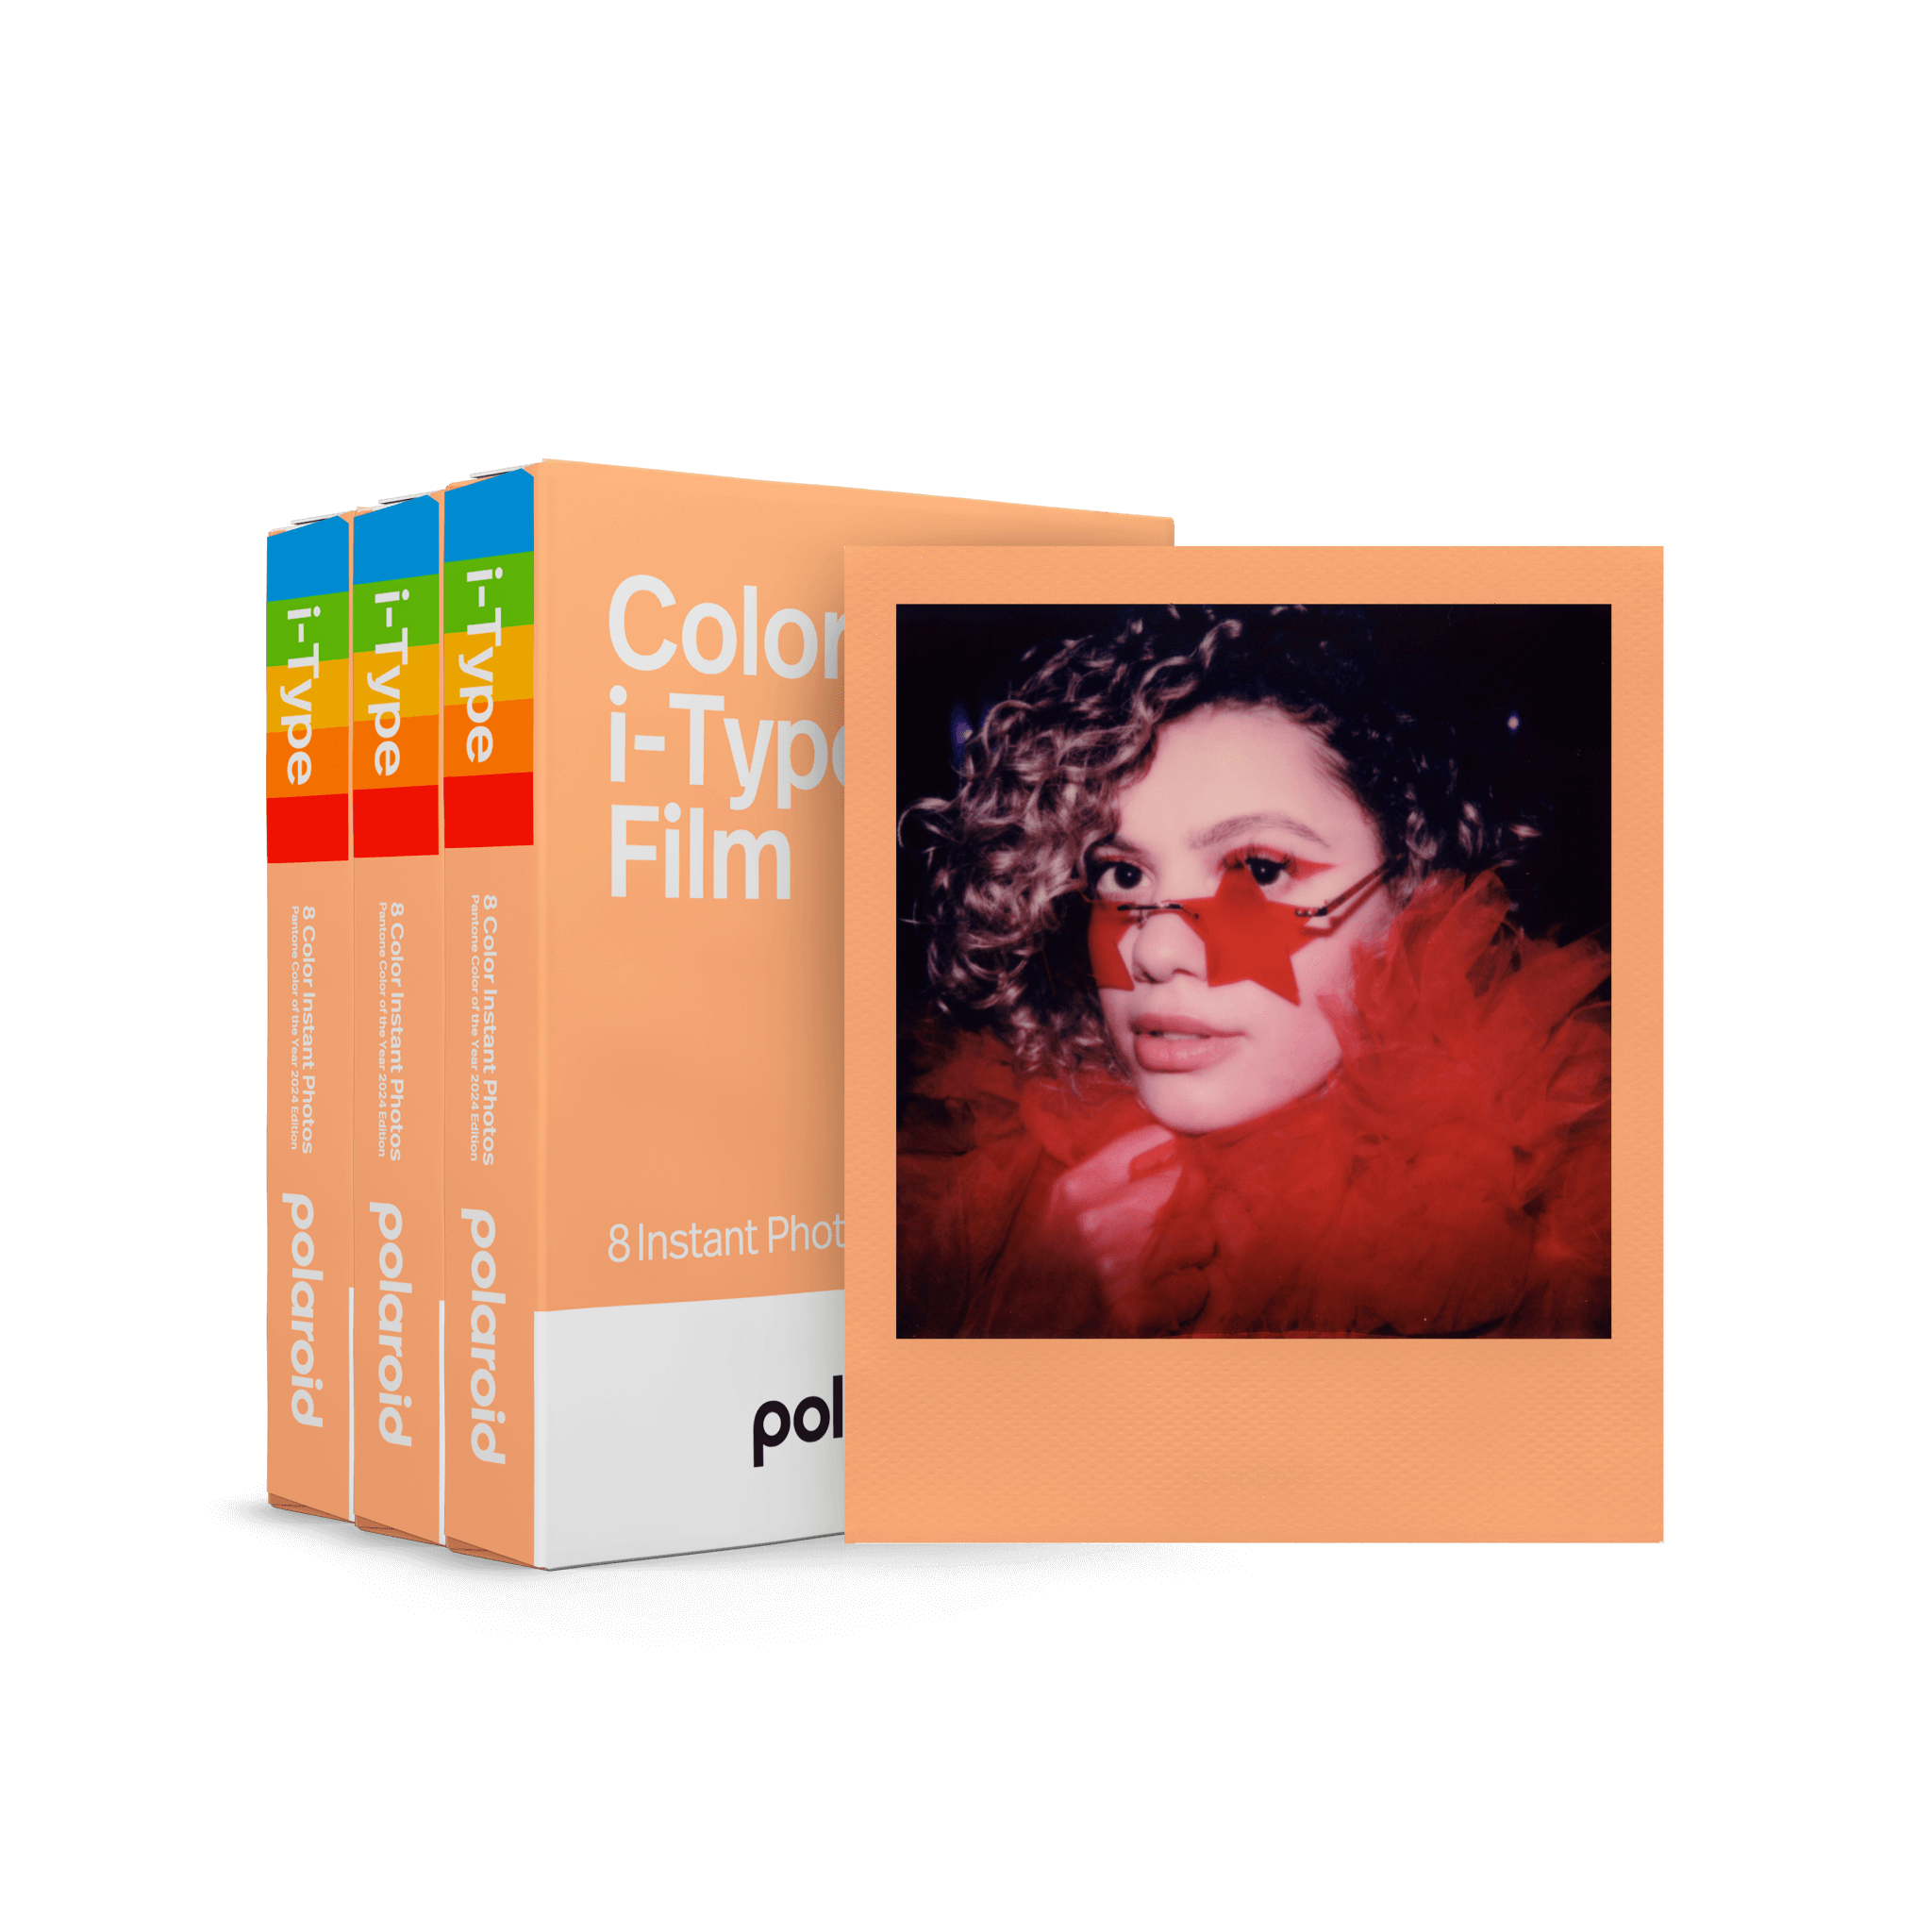 Polaroid lanza su nueva película: Blue 600 Film Reclaimed Edition